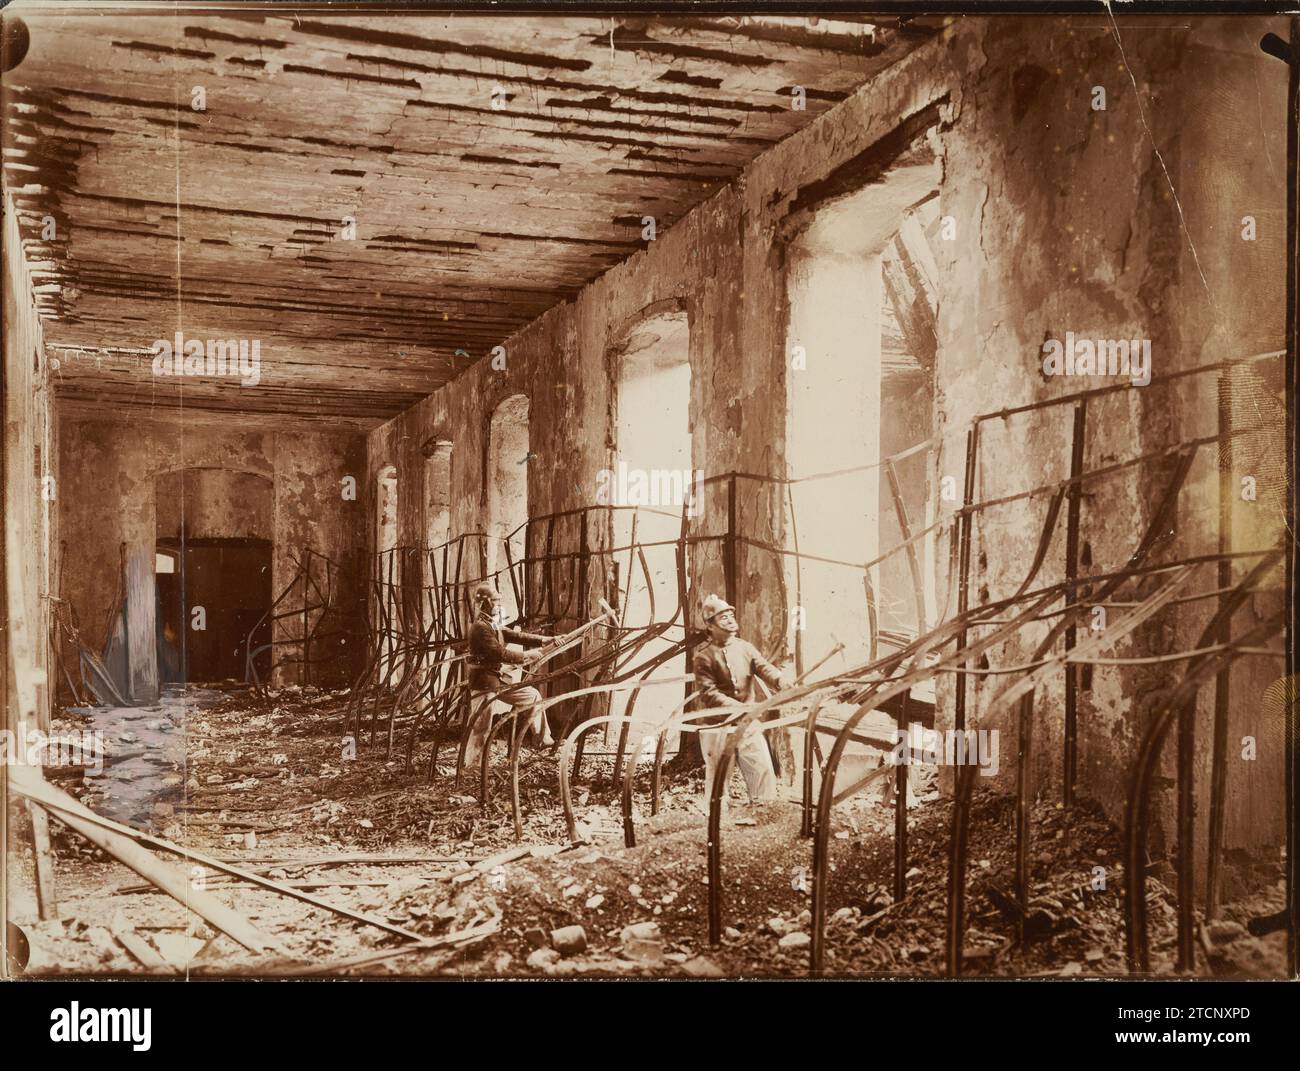 Madrid, 1906. Incendio nella fabbrica di tabacco. Nave dell'oreado de Cigars, dove è iniziato l'incendio. Crediti: Album / Archivo ABC Foto Stock